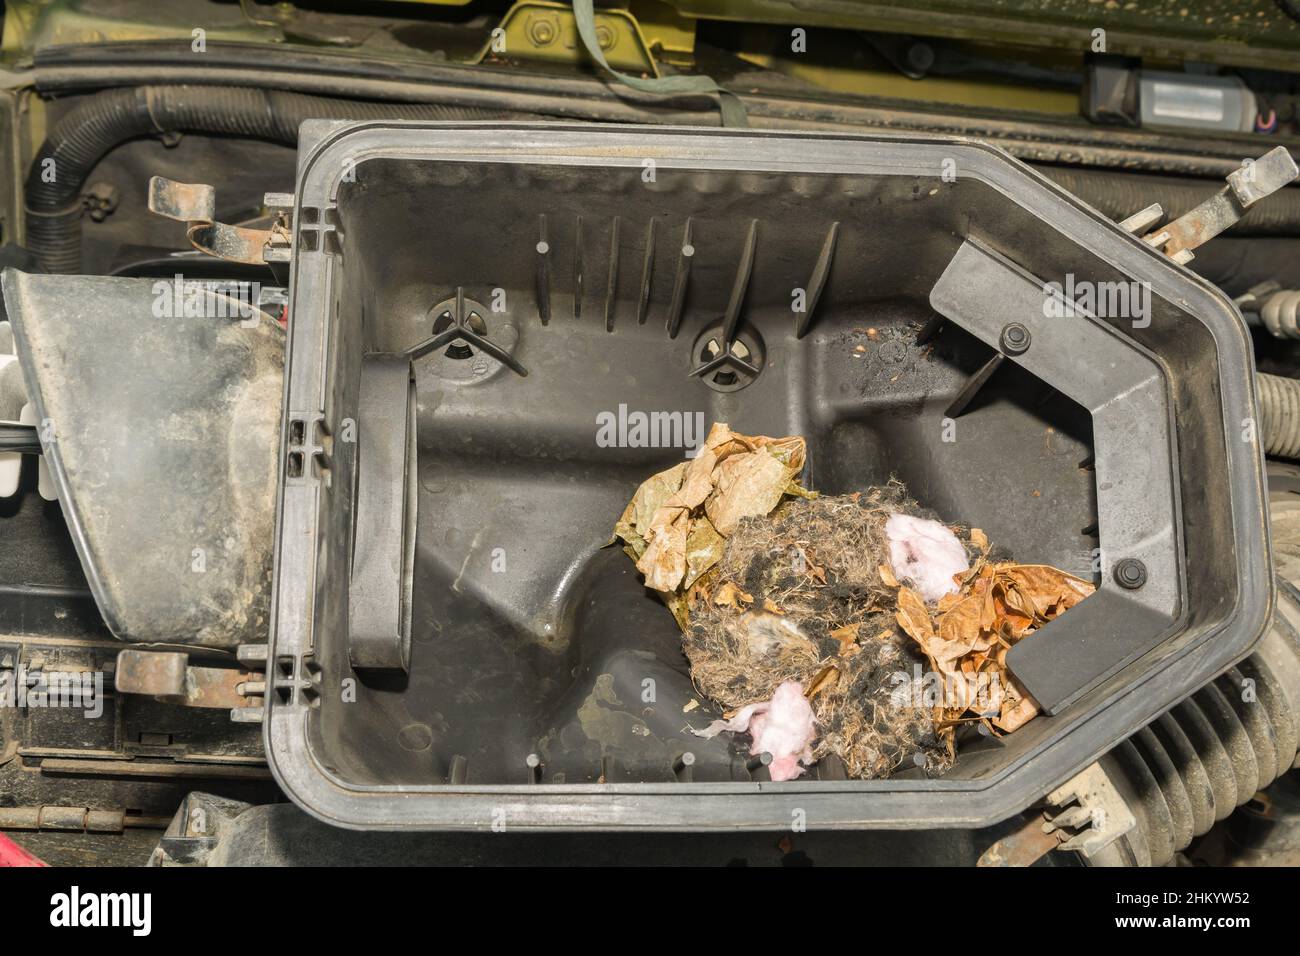 Nid de souris de cerf trouvé dans le filtre à air d'une voiture Photo Stock  - Alamy